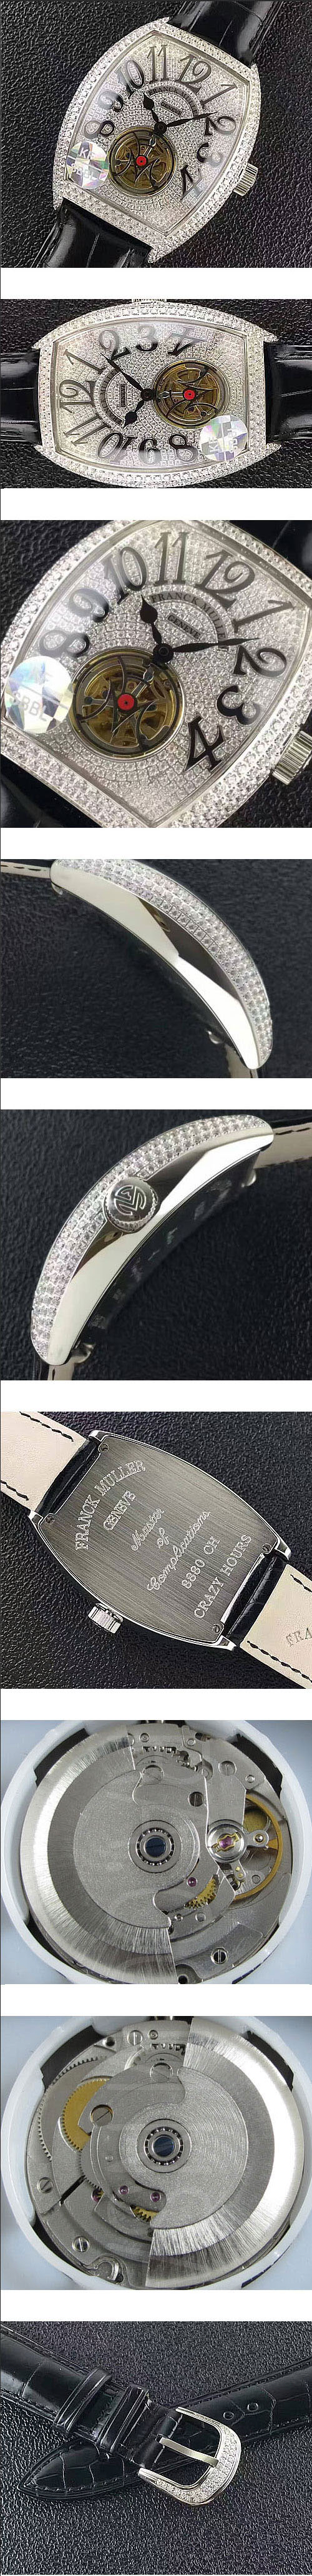 お洒落新品 コピー時計 FRANCK MULLER クロコ21600振動 (自動巻き) 人工ダイヤ サファイヤクリスタル